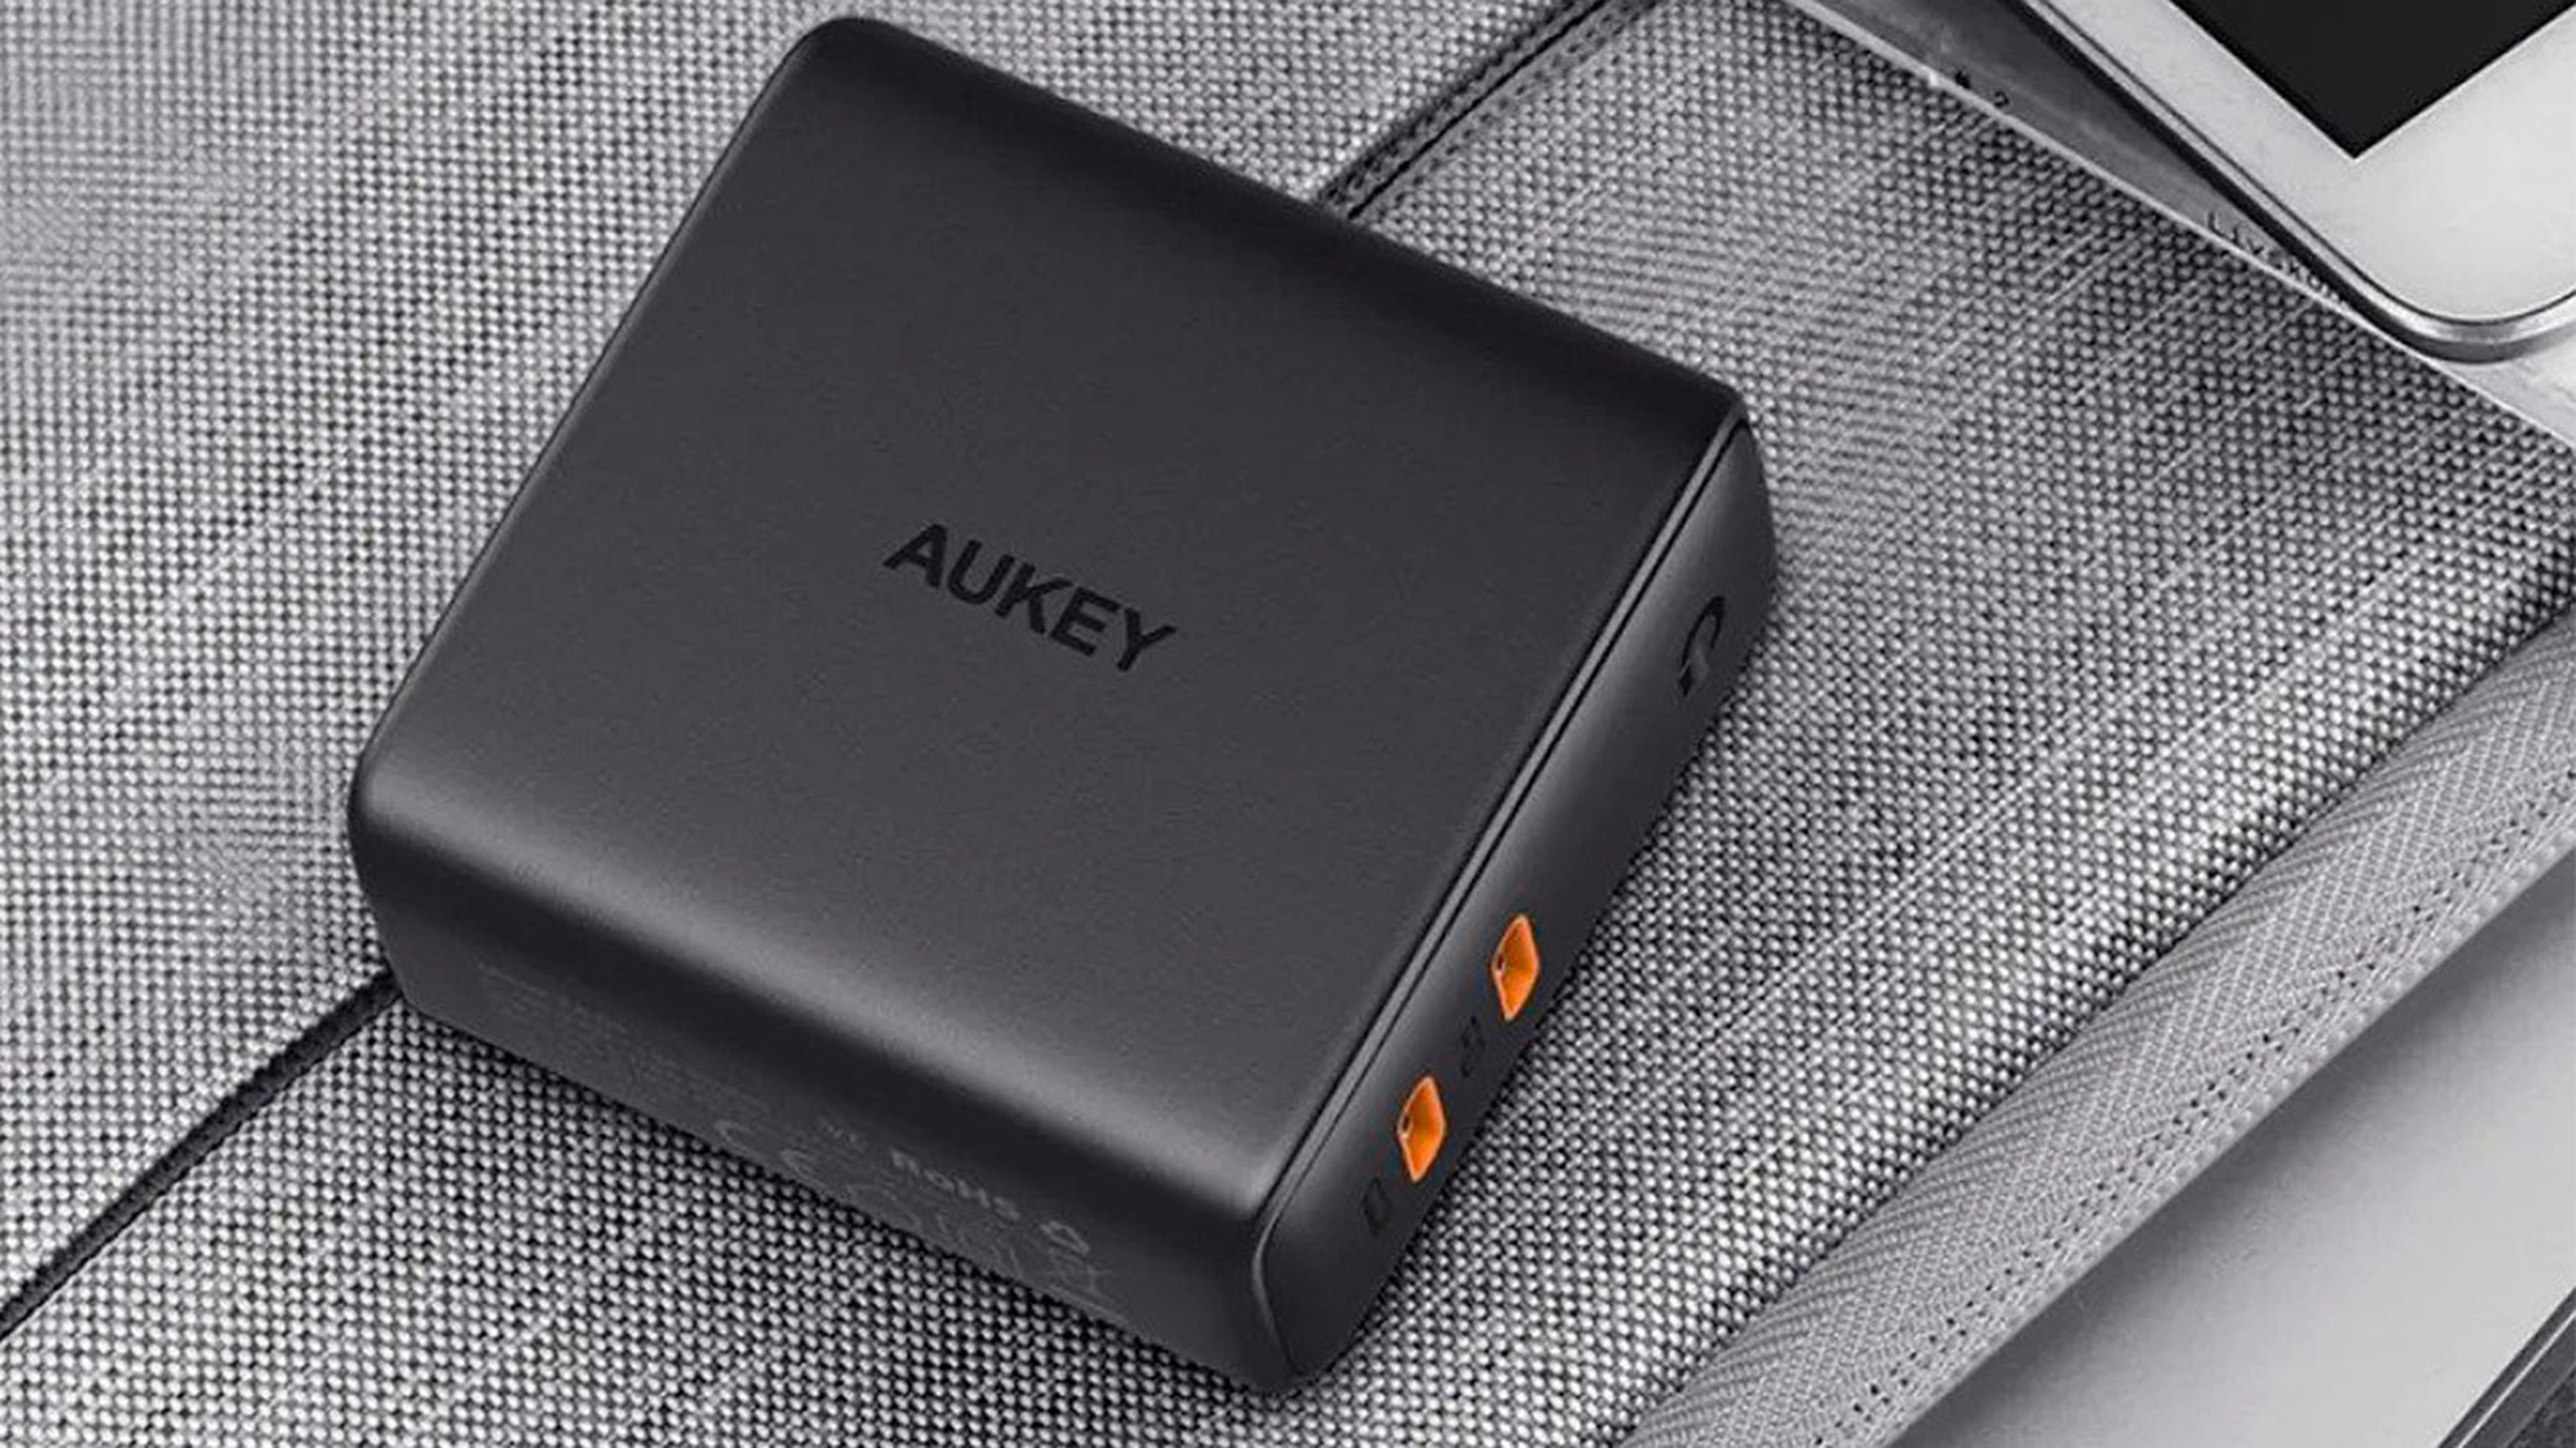 Optimiza el tiempo de carga de tus dispositivos con los nuevos sistemas de carga de Aukey